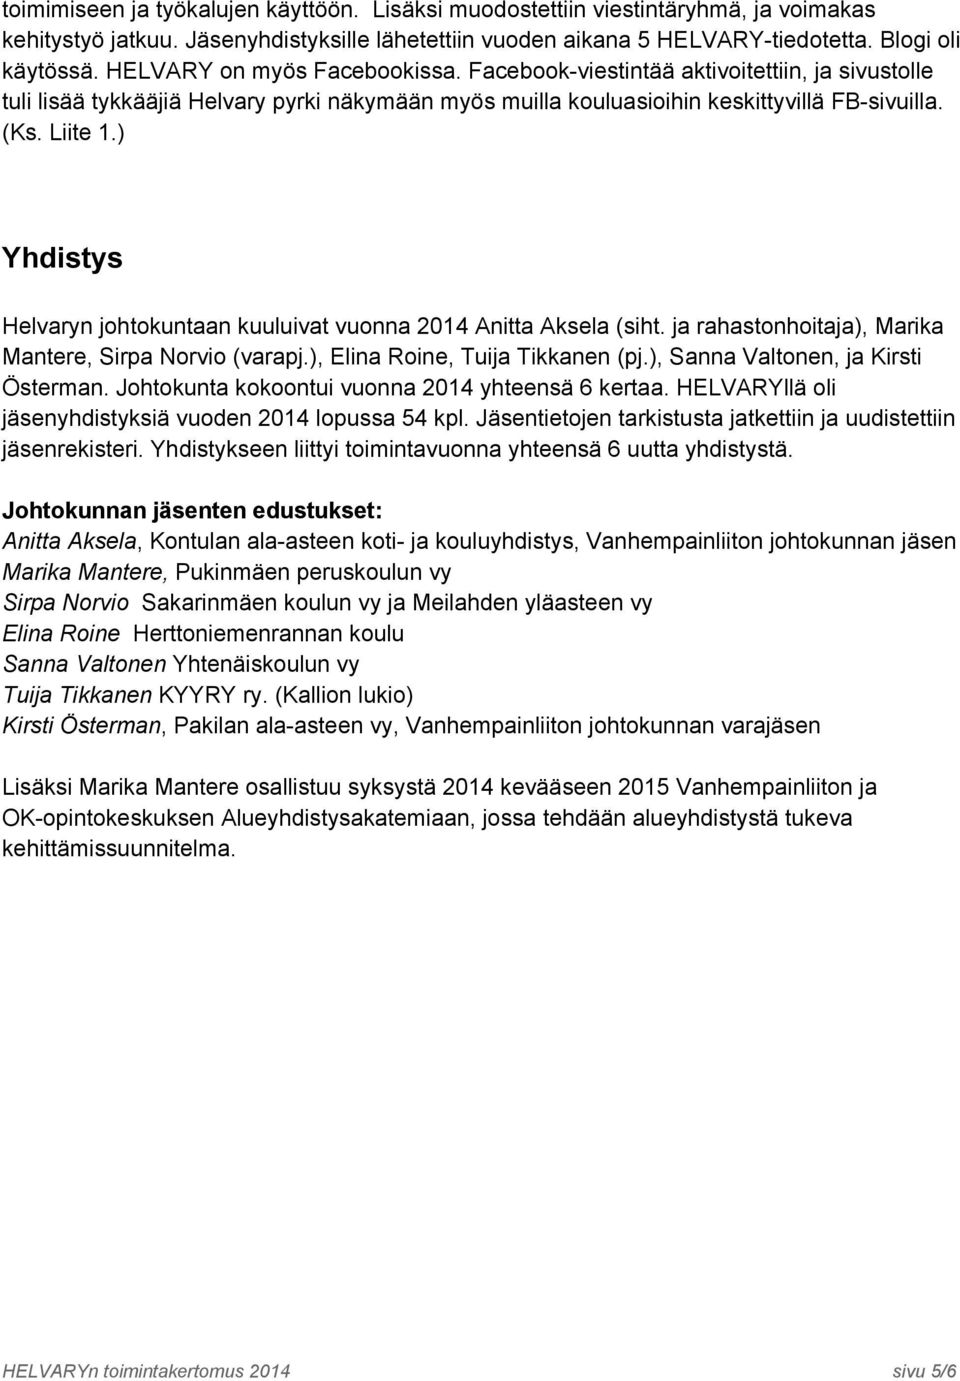 ) Yhdistys Helvaryn johtokuntaan kuuluivat vuonna 2014 Anitta Aksela (siht. ja rahastonhoitaja), Marika Mantere, Sirpa Norvio (varapj.), Elina Roine, Tuija Tikkanen (pj.